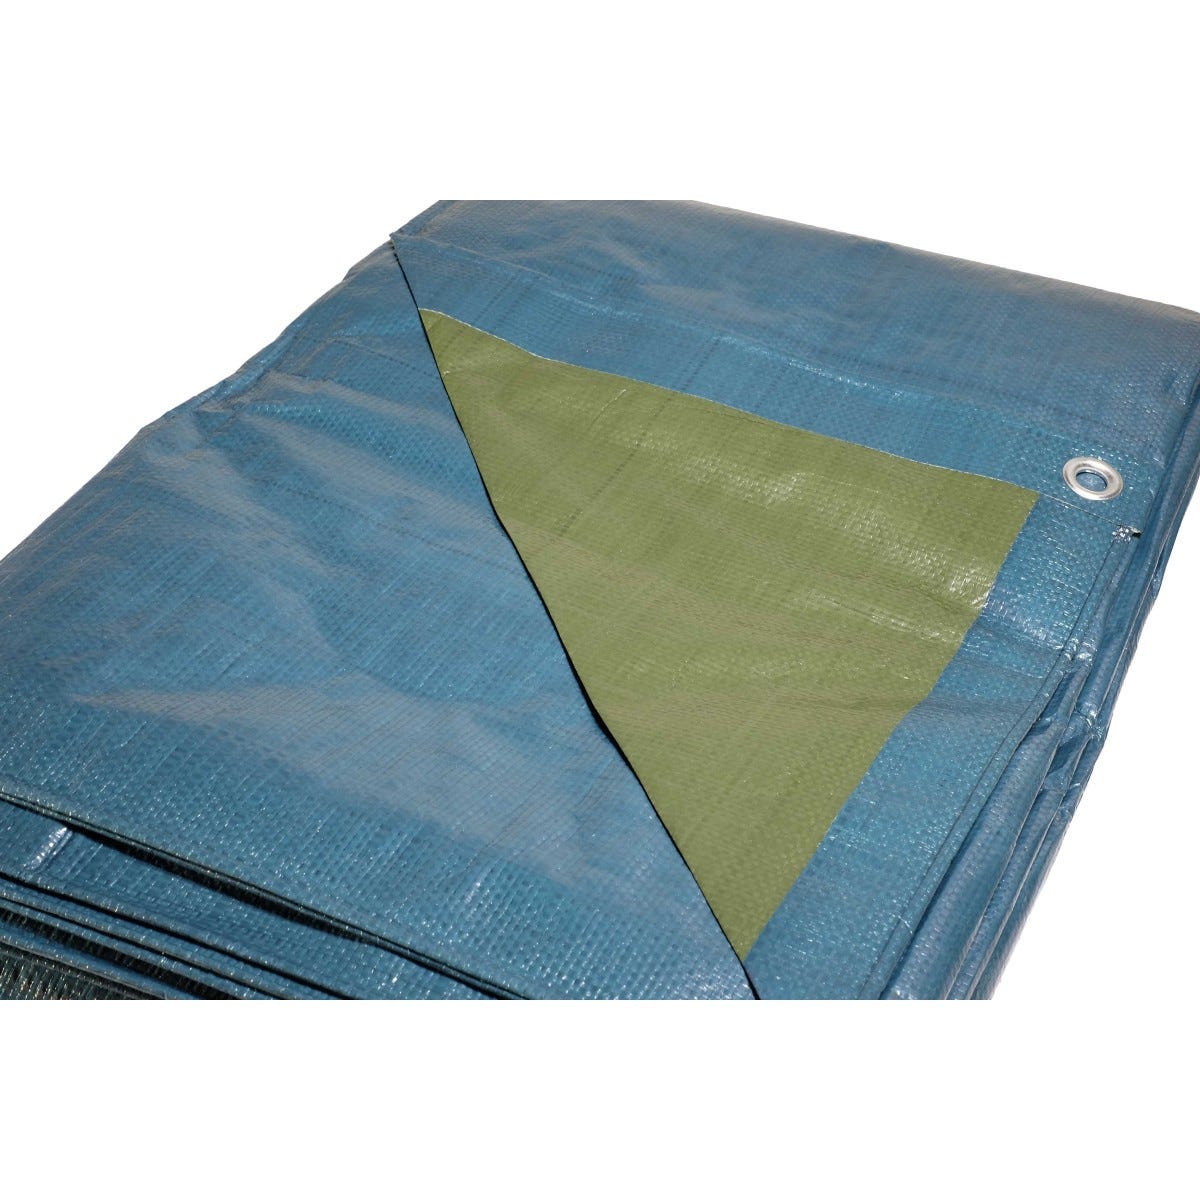 Bâche plastique 8x12 m bleue et verte 150g/m² - bâche de protection polyéthylène 4